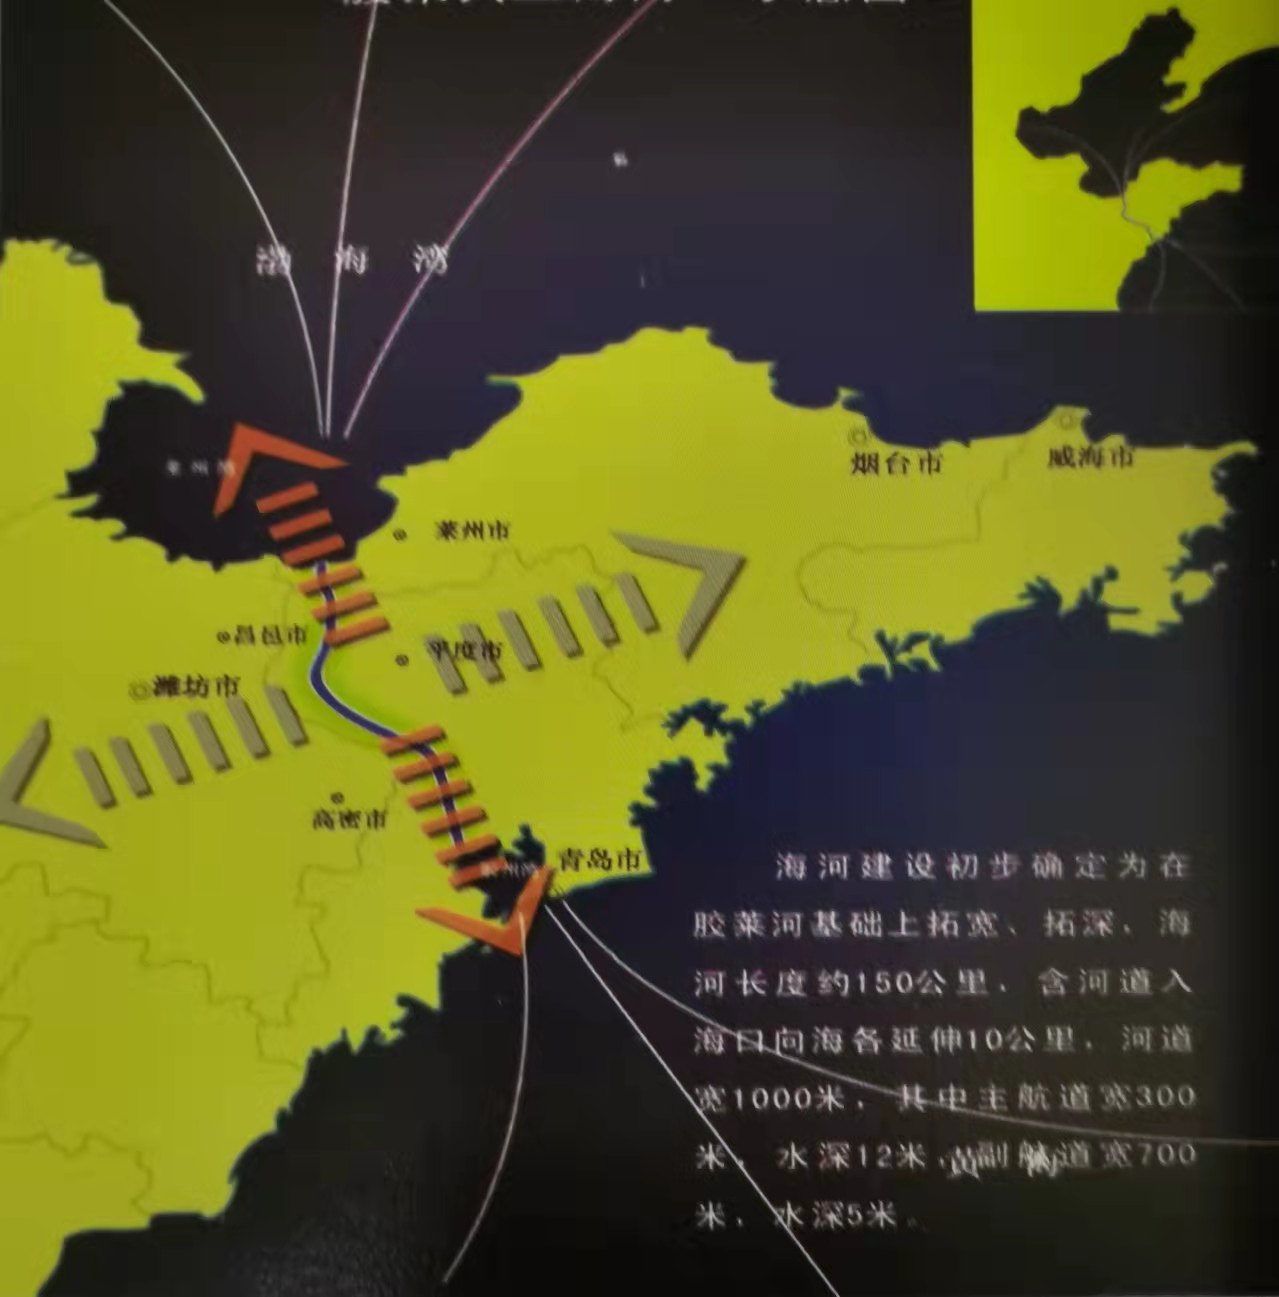 黄、渤海区域经济生态协调发展新思维—建设胶莱人工海河战略工程